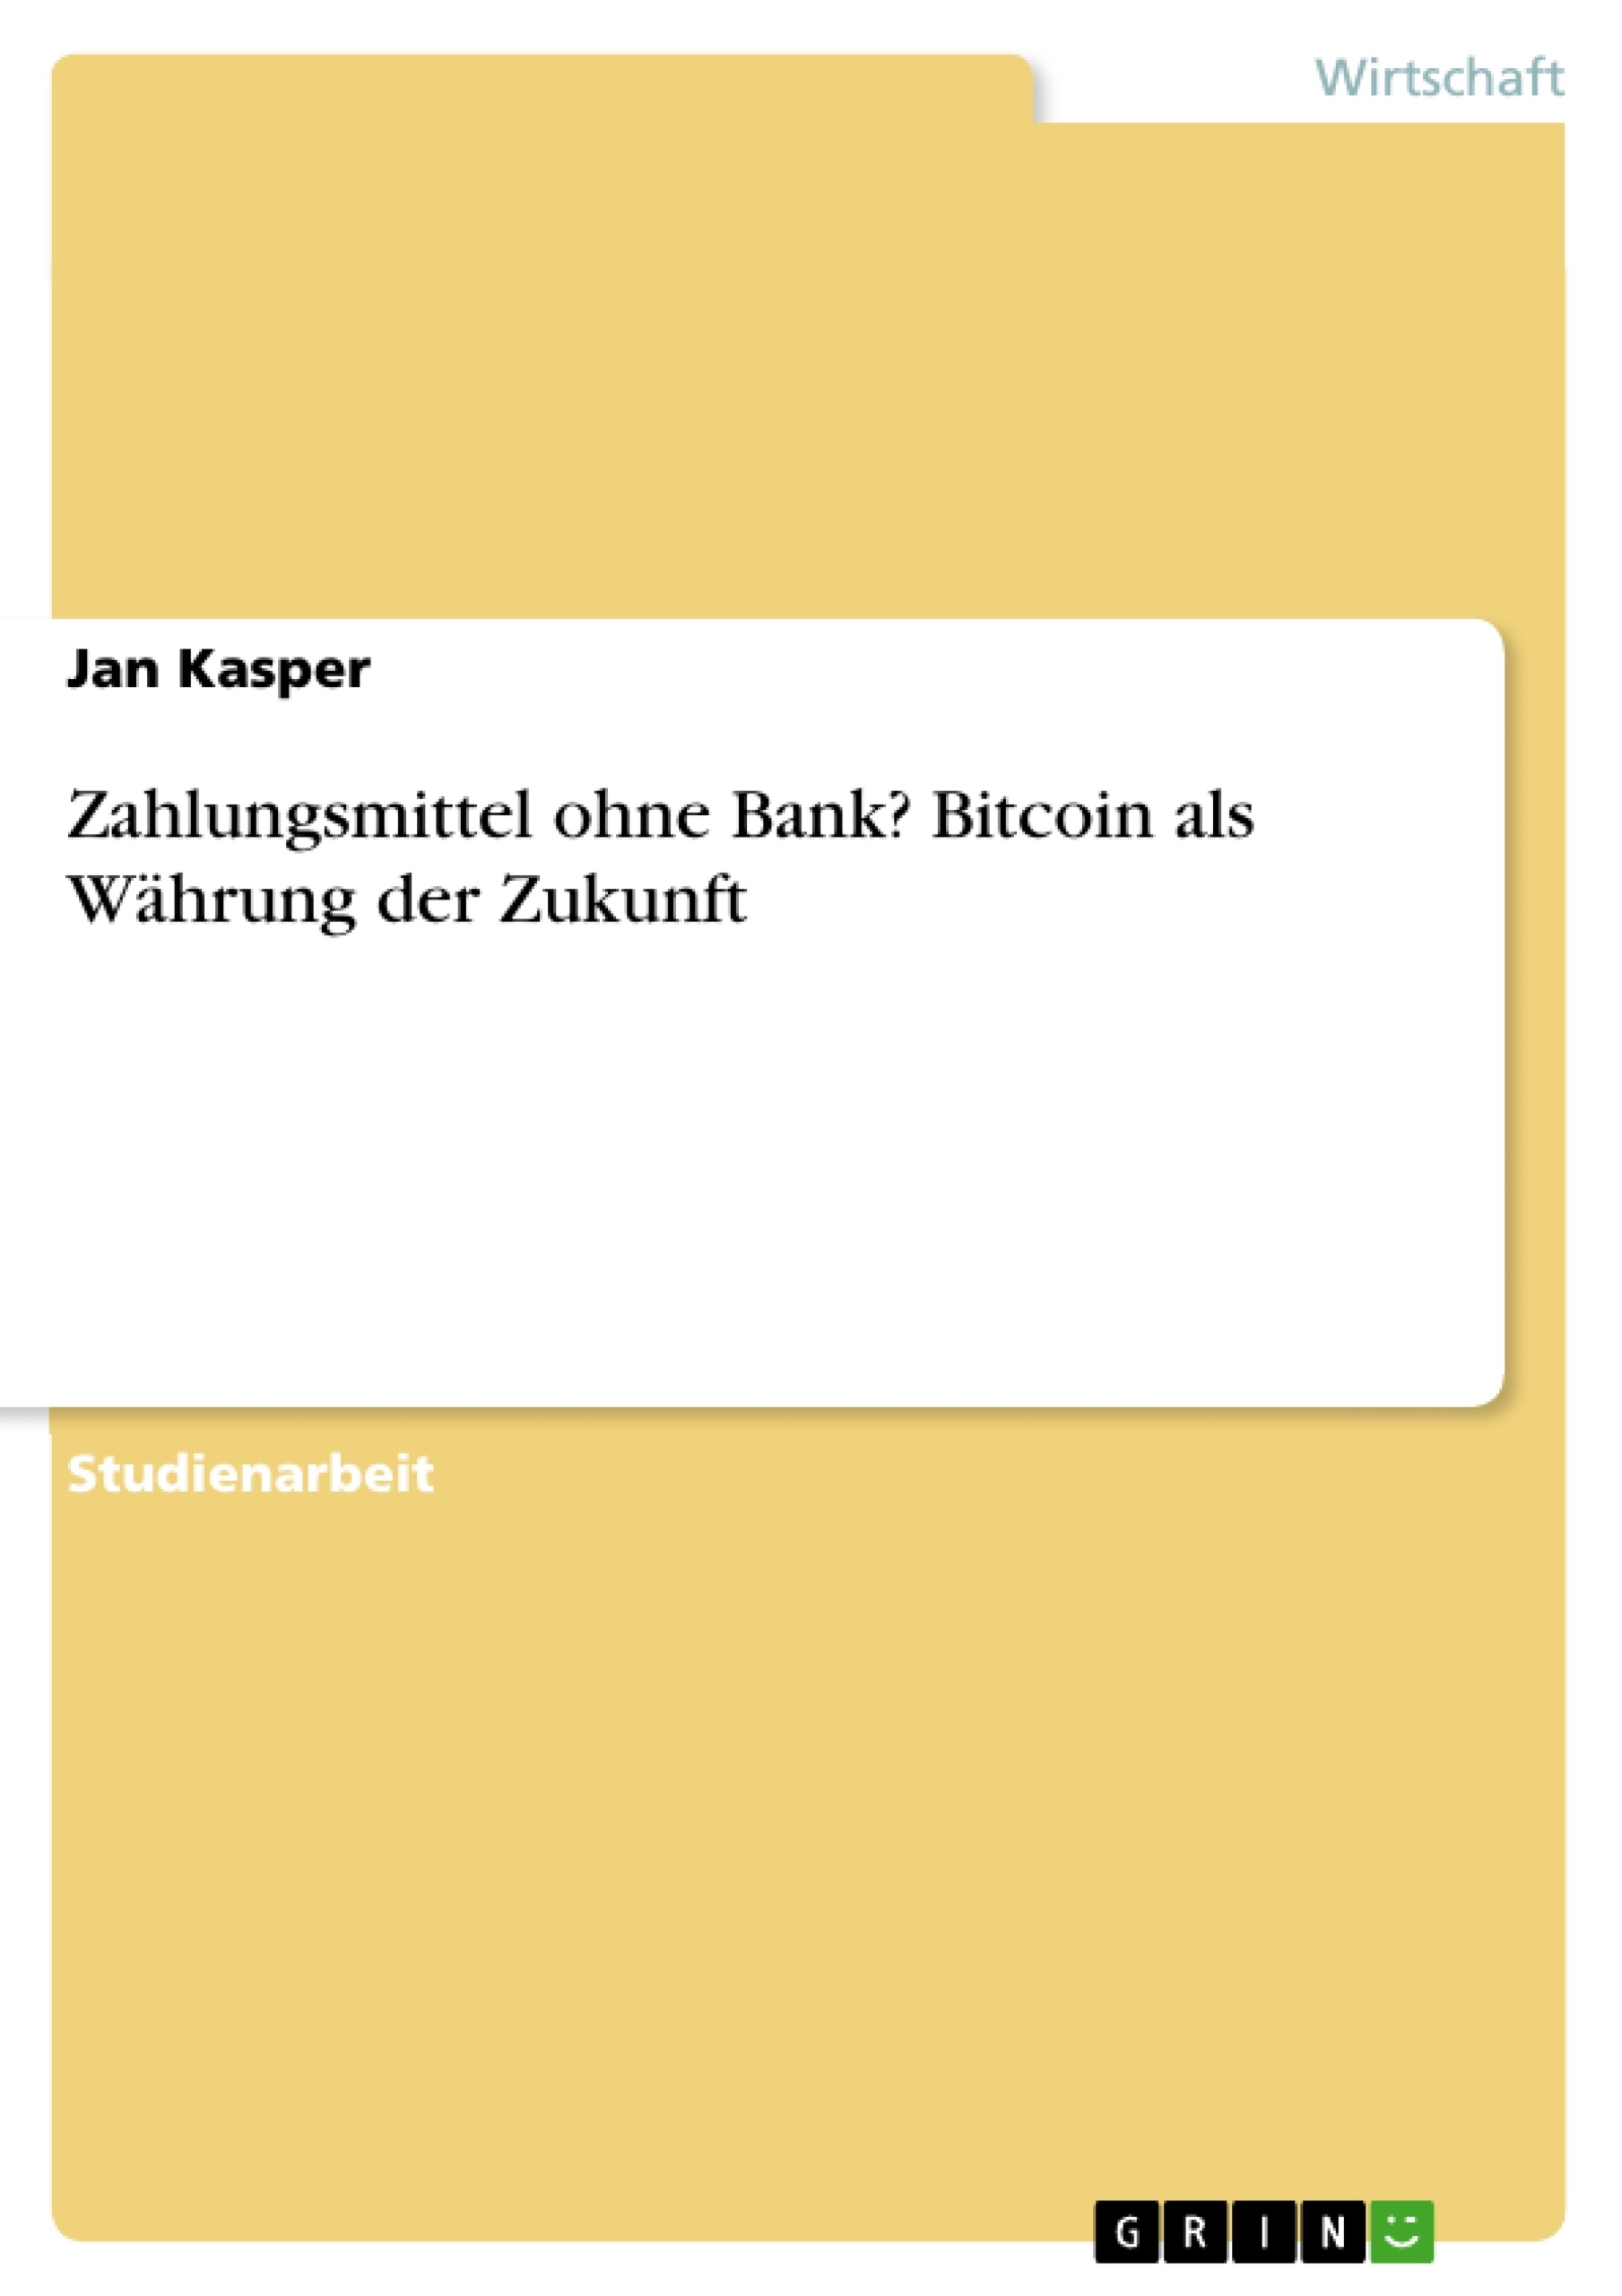 Título: Zahlungsmittel ohne Bank? Bitcoin als Währung der Zukunft